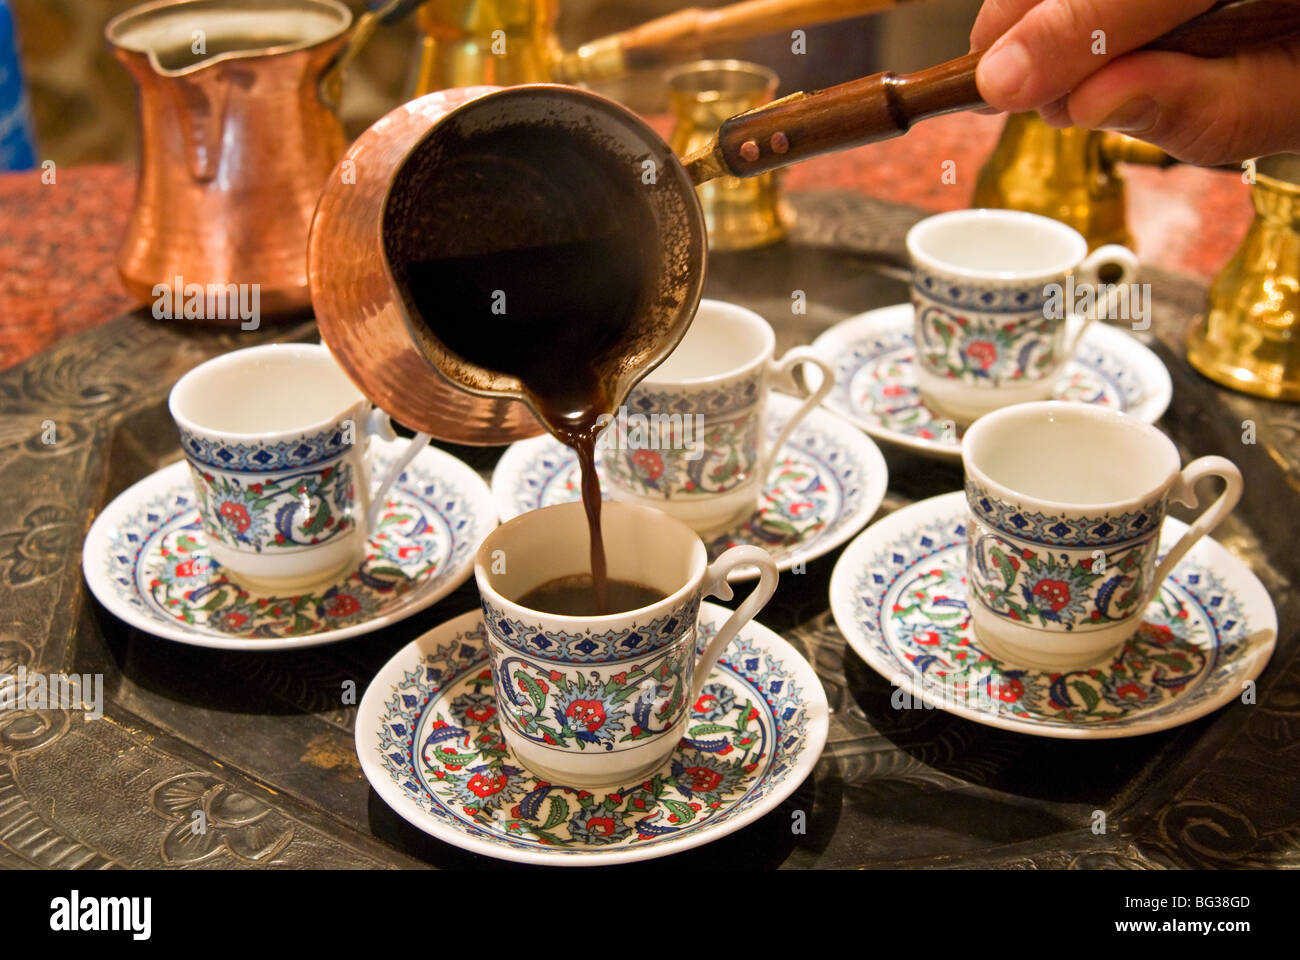 Arabischer Kaffee, Dubai, Vereinigte Arabische Emirate, Naher Osten  Stockfotografie - Alamy